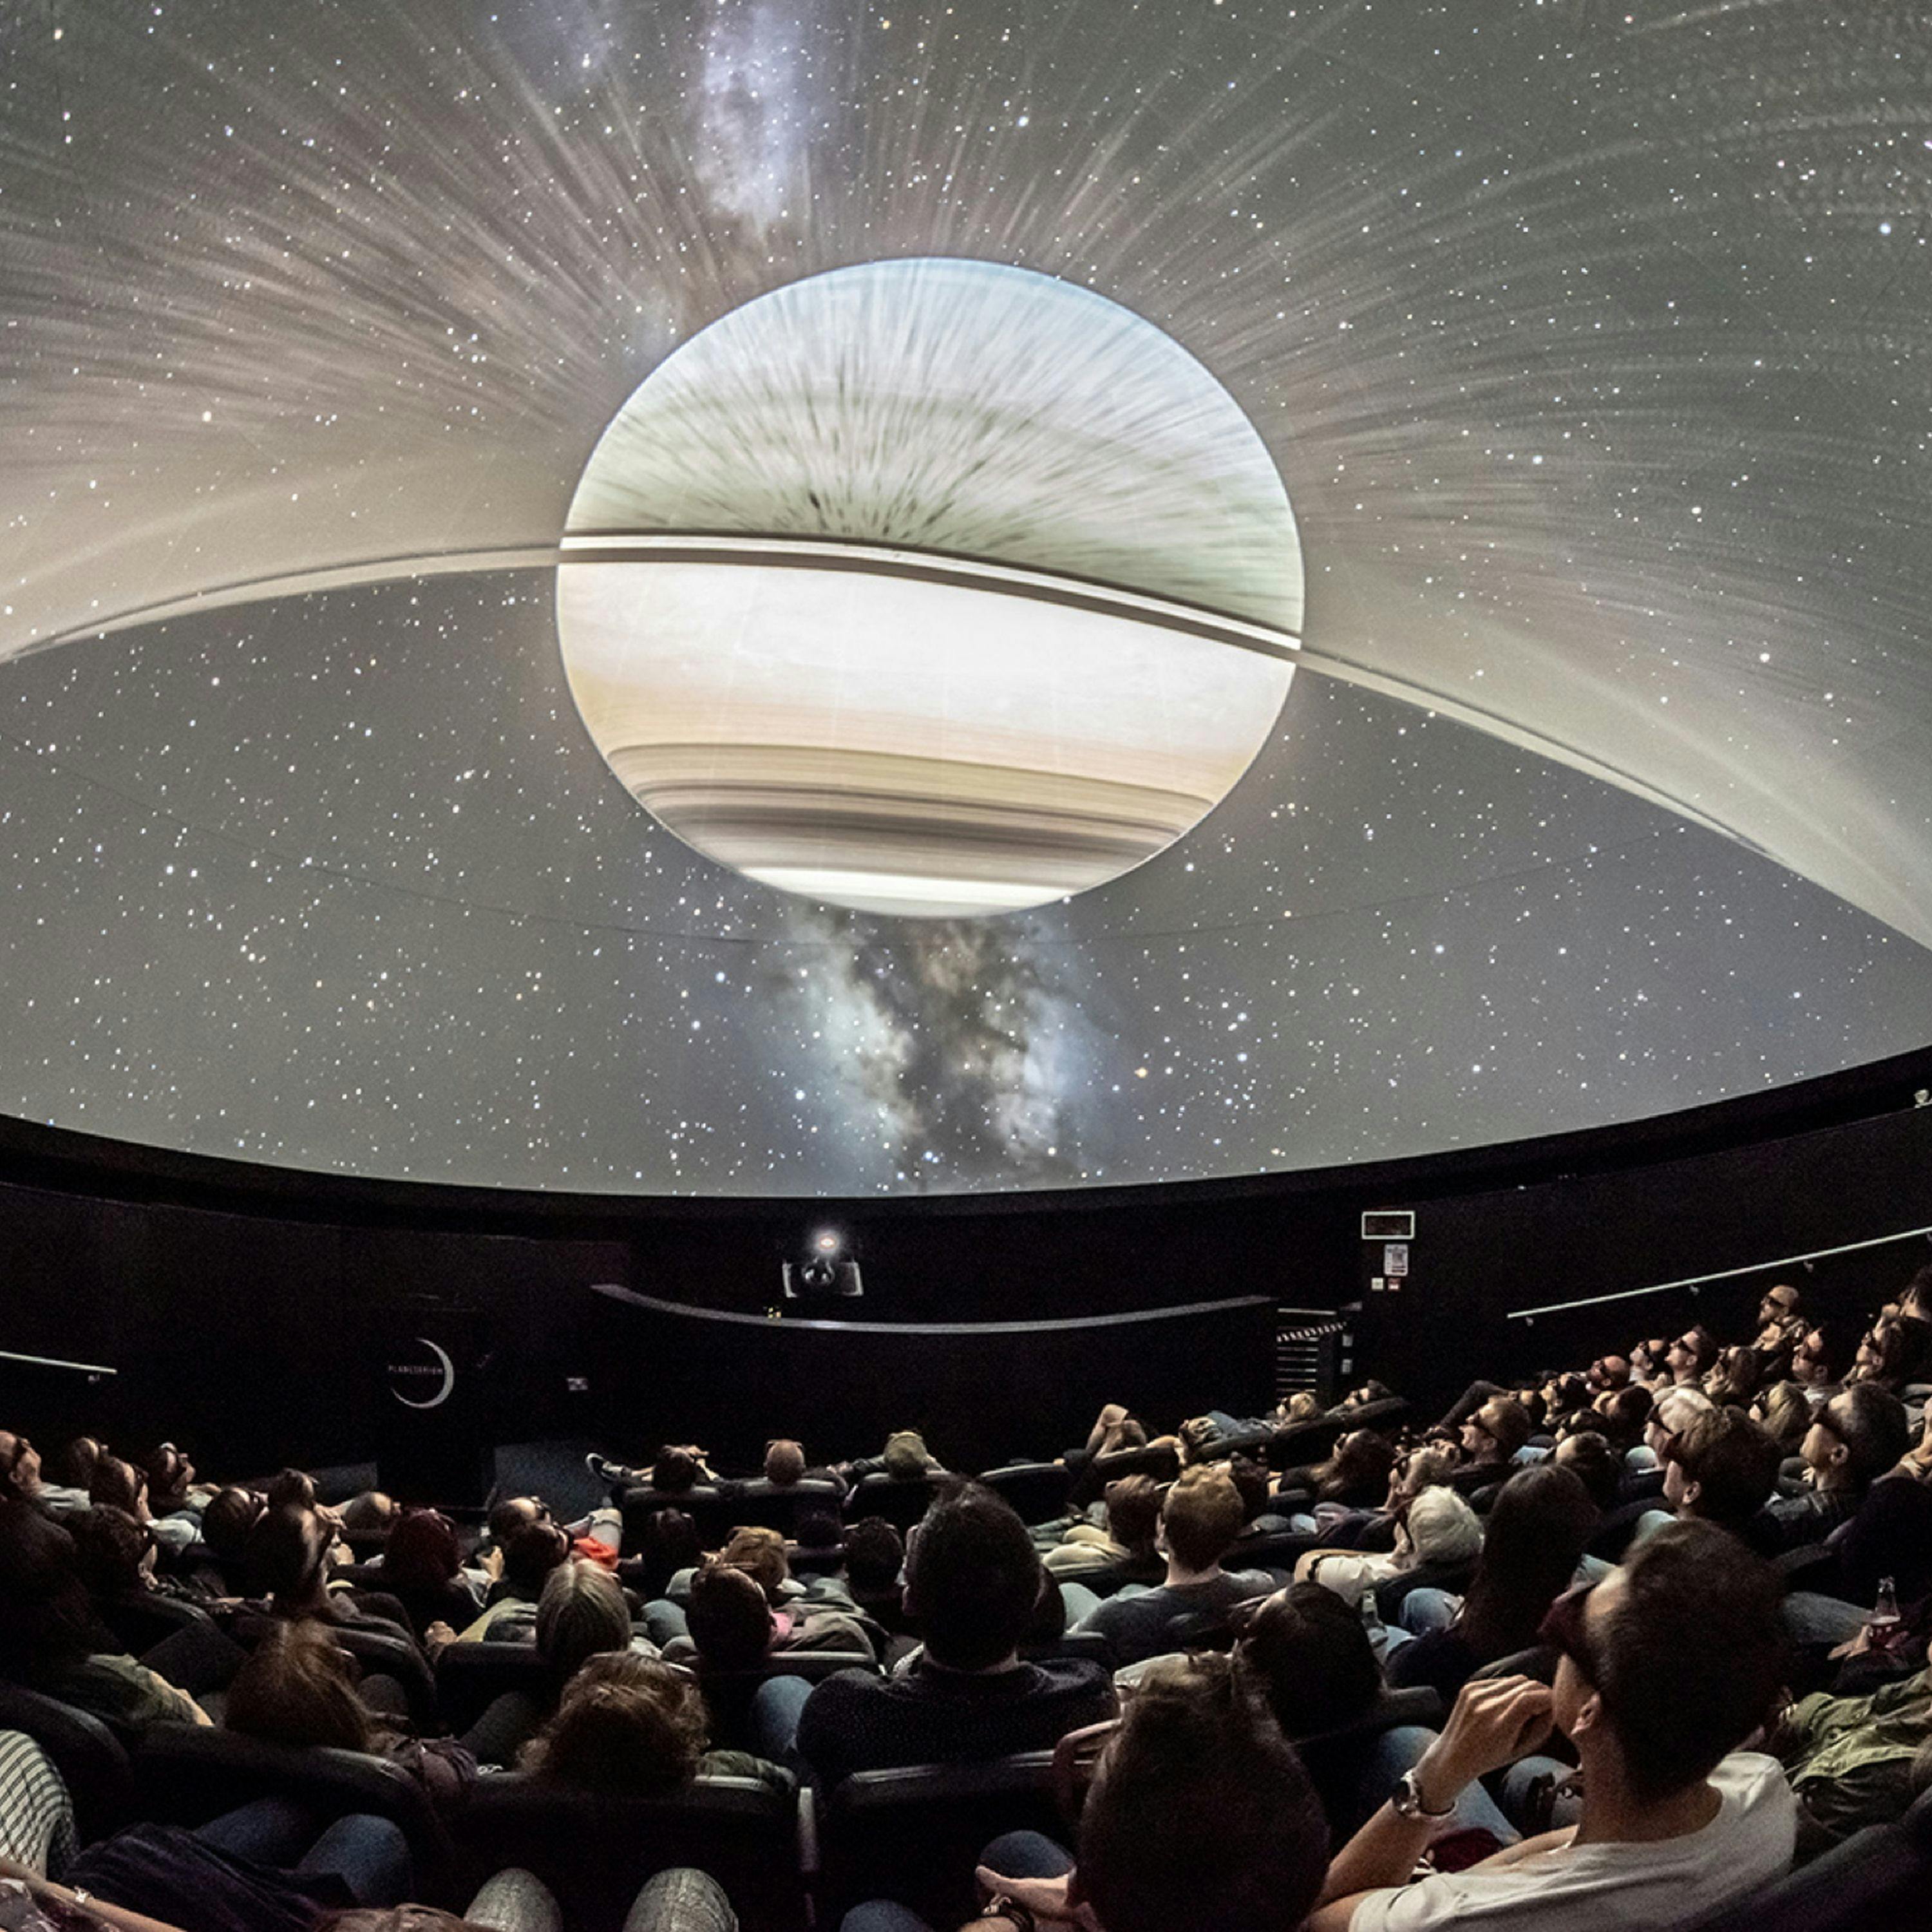 Planetarium special